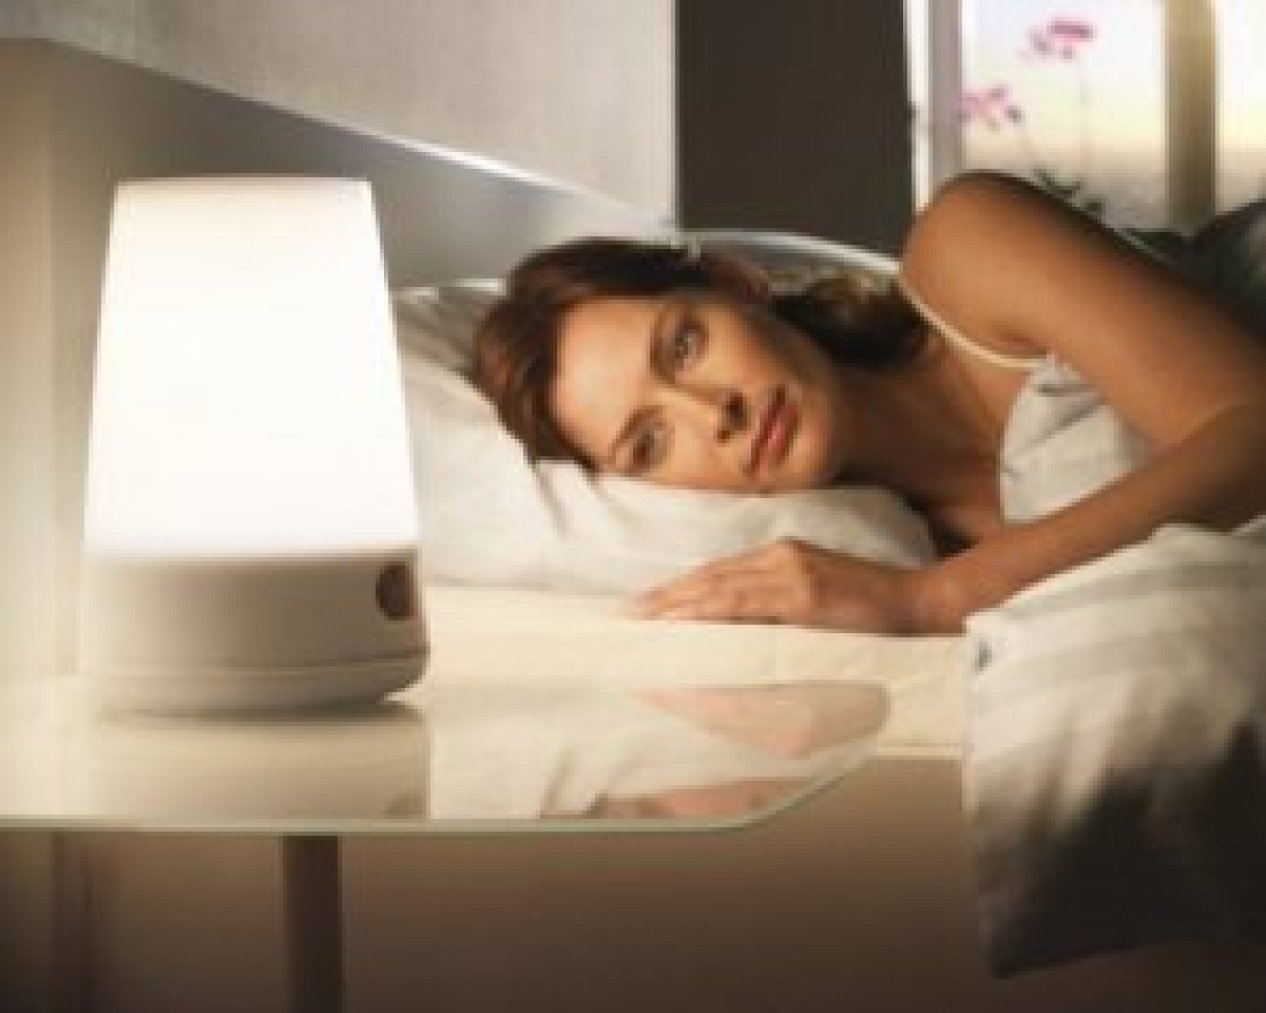 Спать при включенном свете хорошо или плохо для вас?